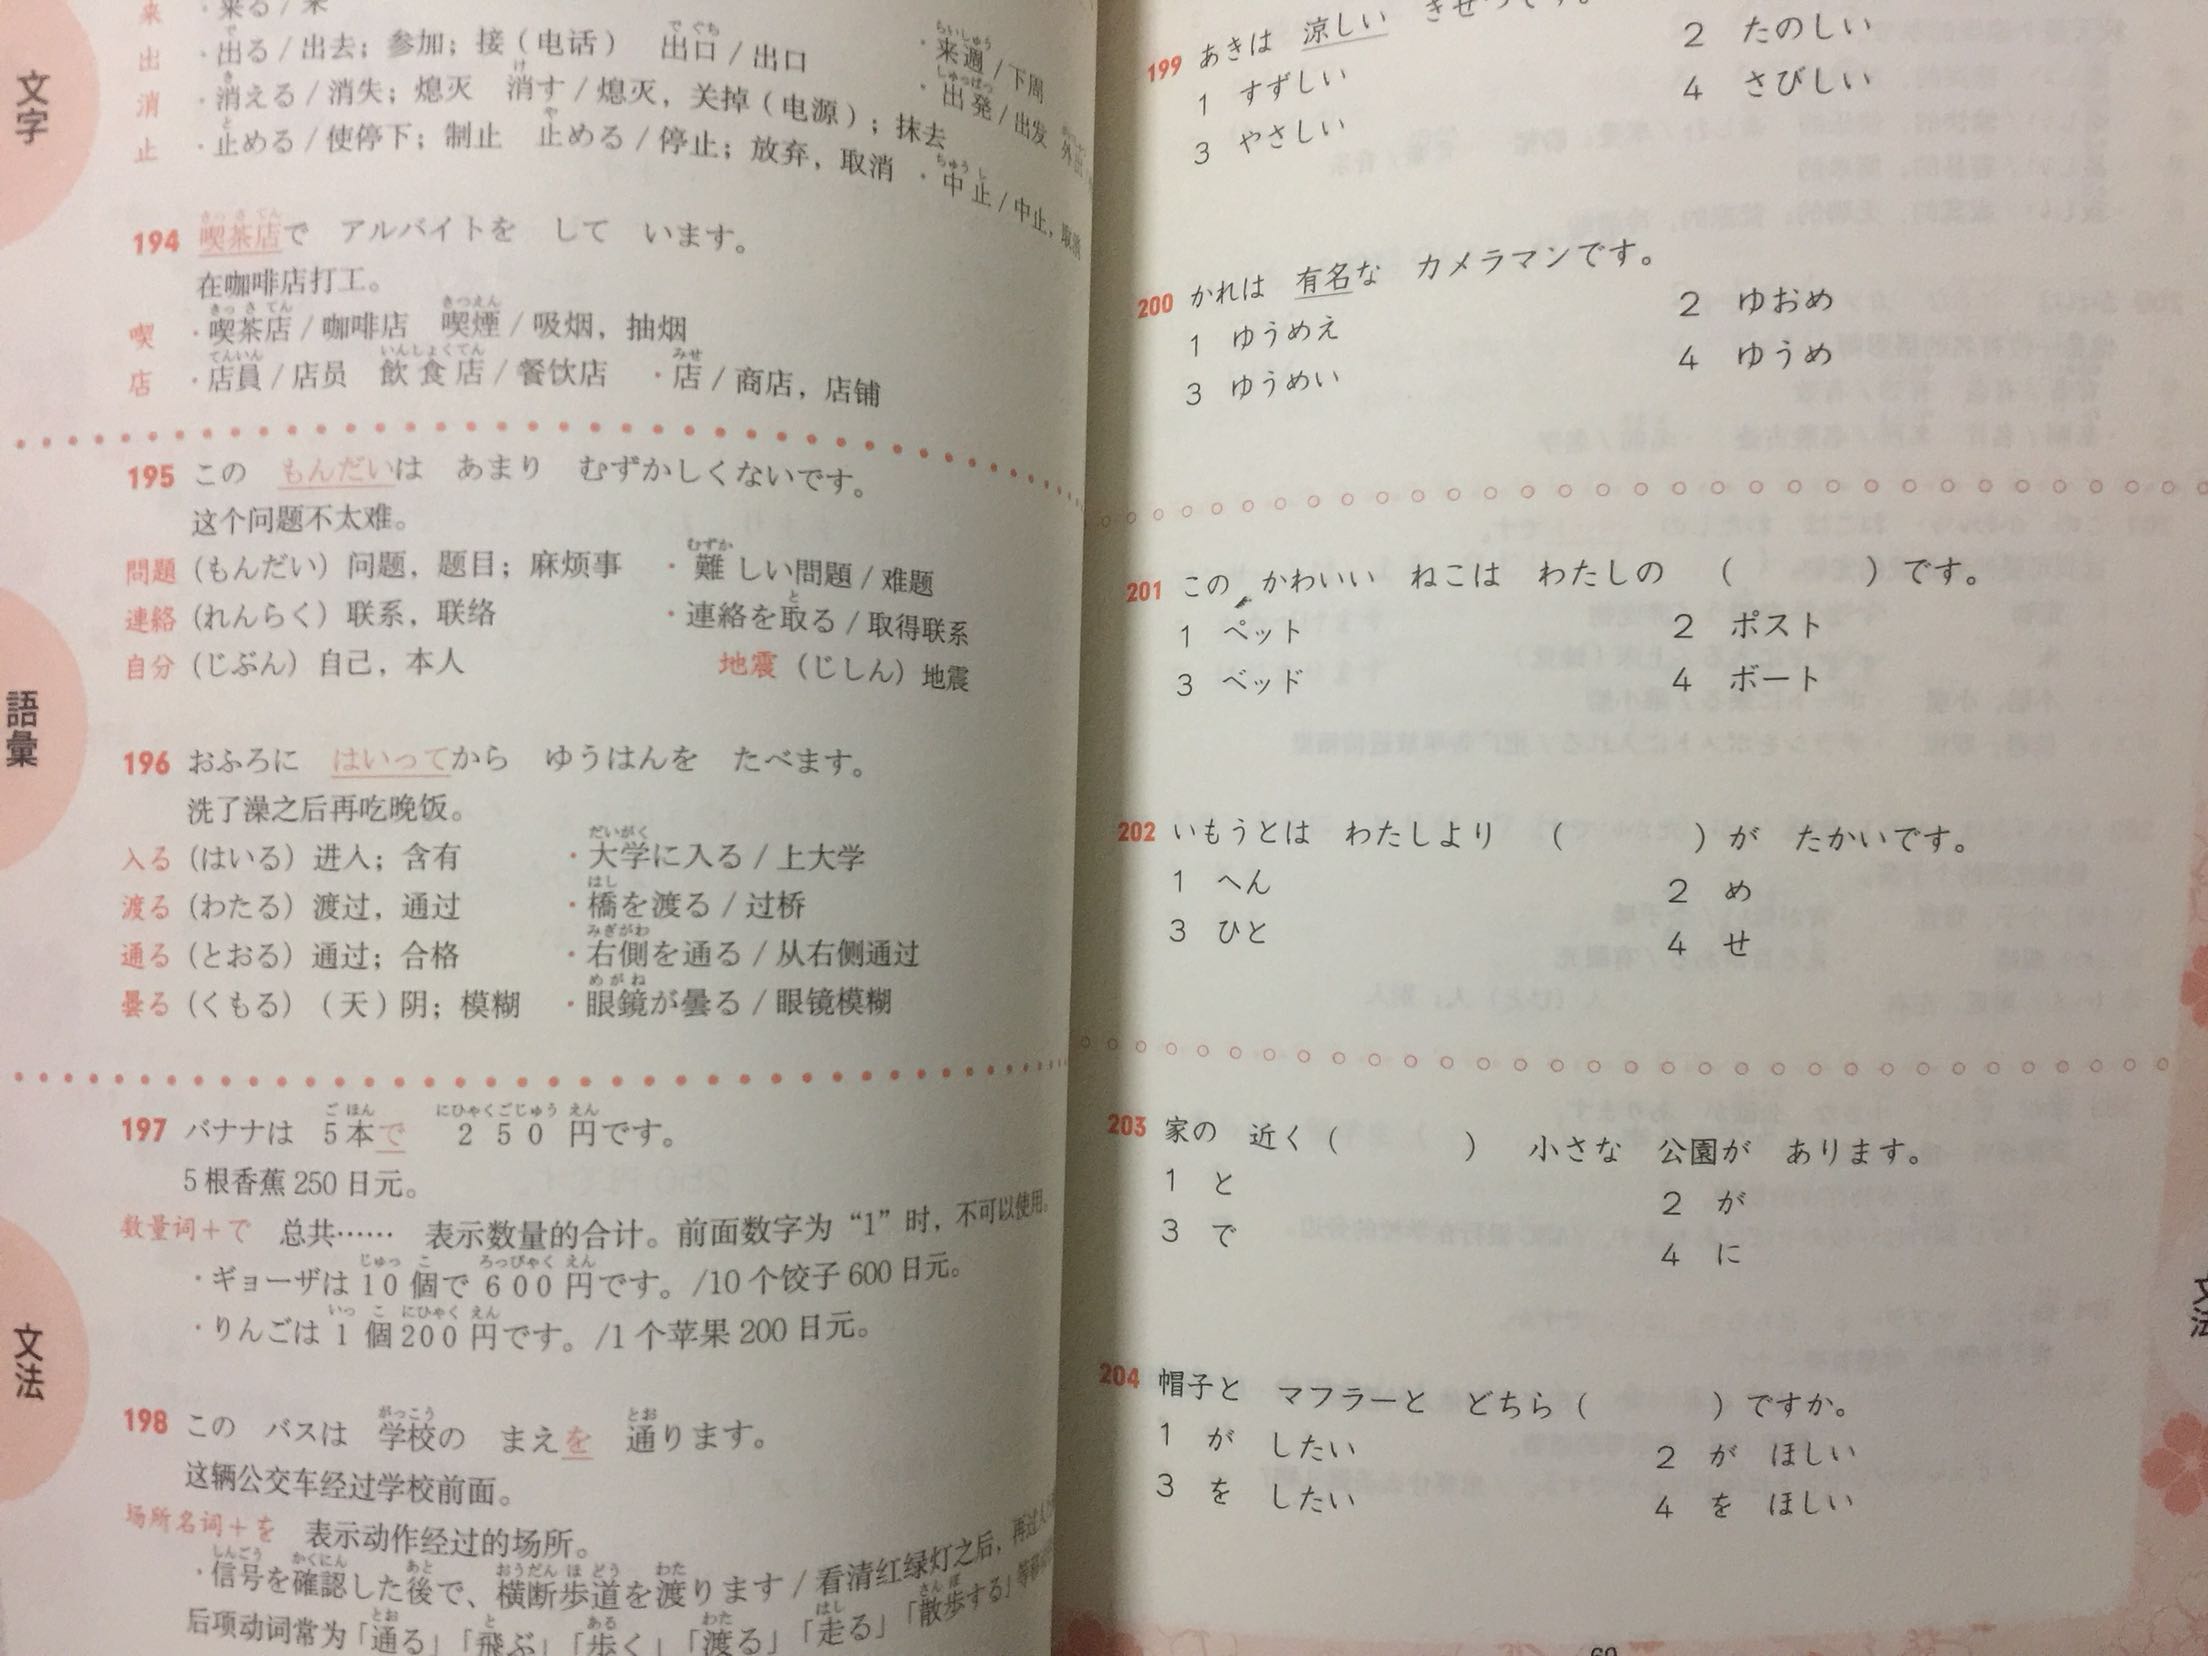 很好的日语学习书，双十一搞活动买的价格很实惠！送货也很快！非常满意！赞一个！